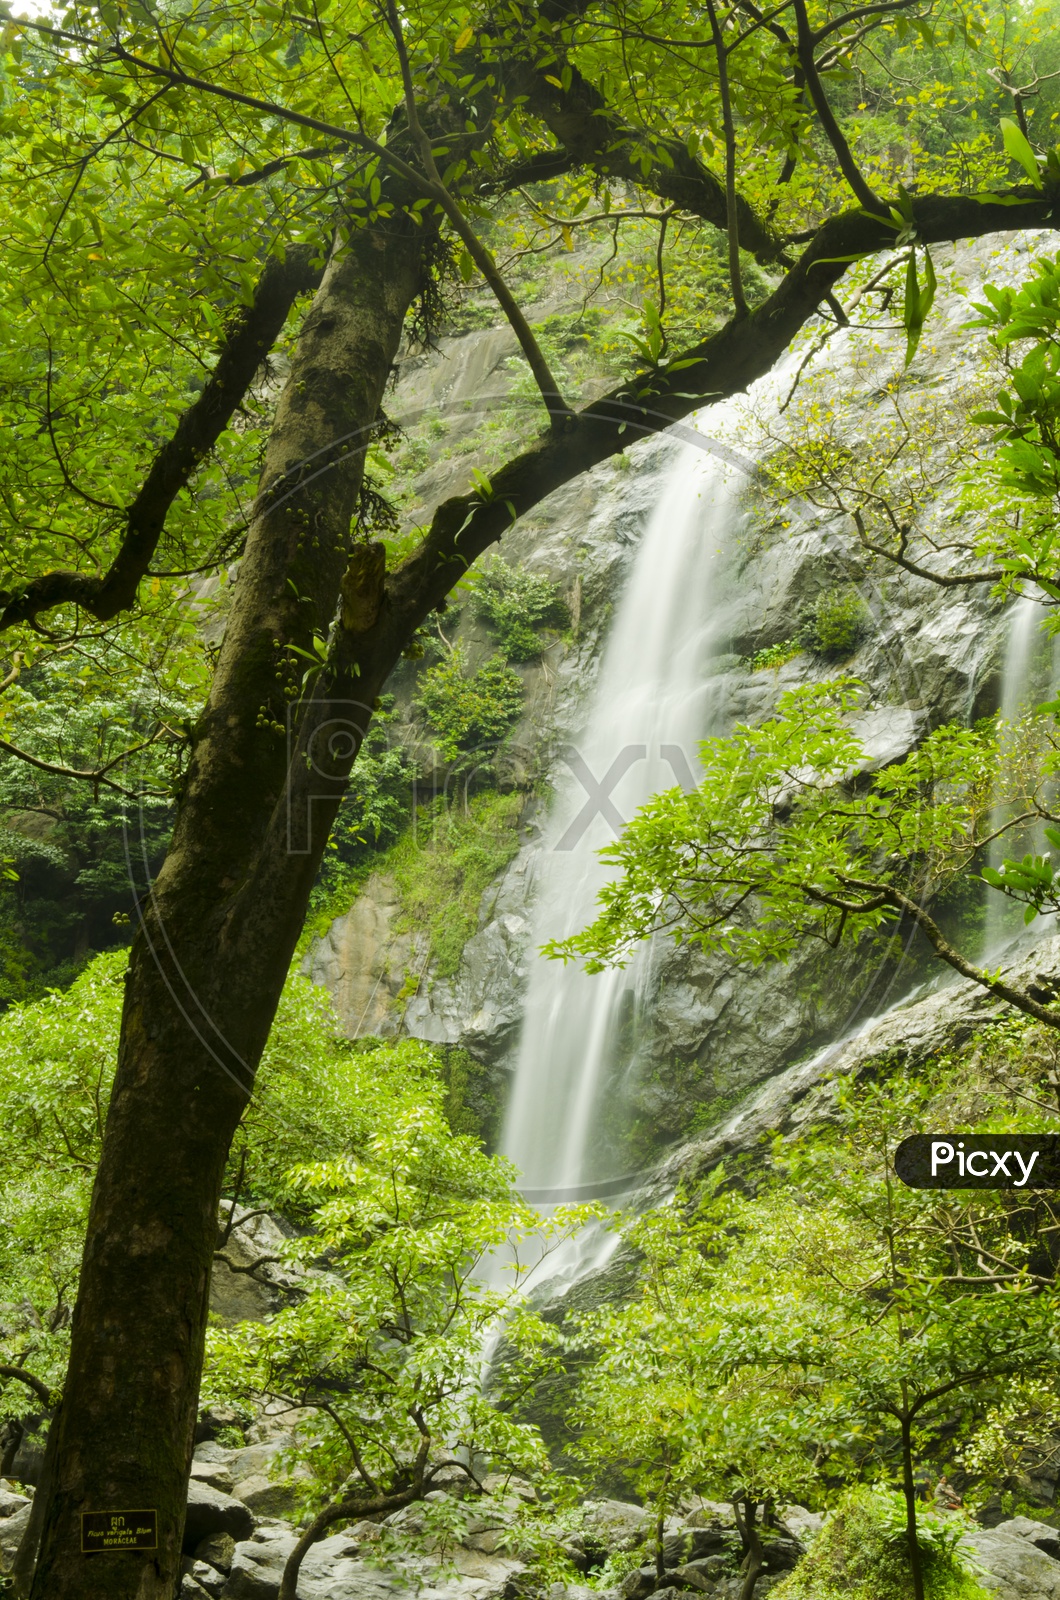 Trees alongside the Klong lan Waterfalls in Thailand